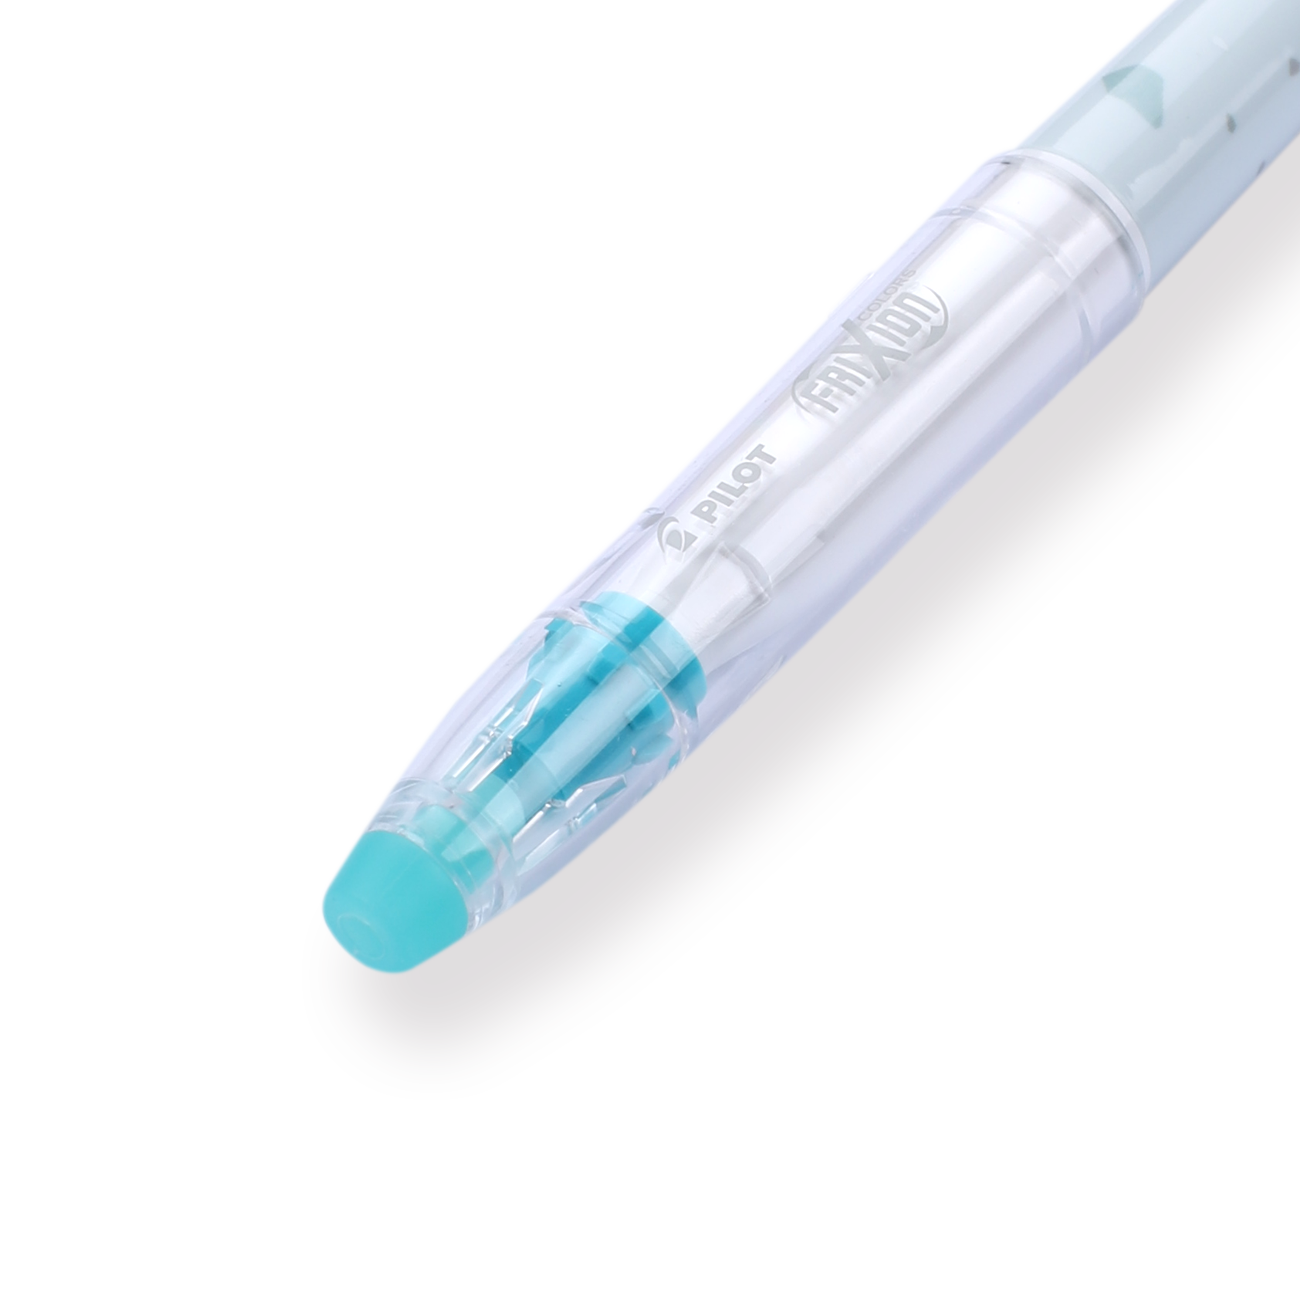 Pilot Eraser for Frxion Dry Erase Marker (ELF02-10-L)